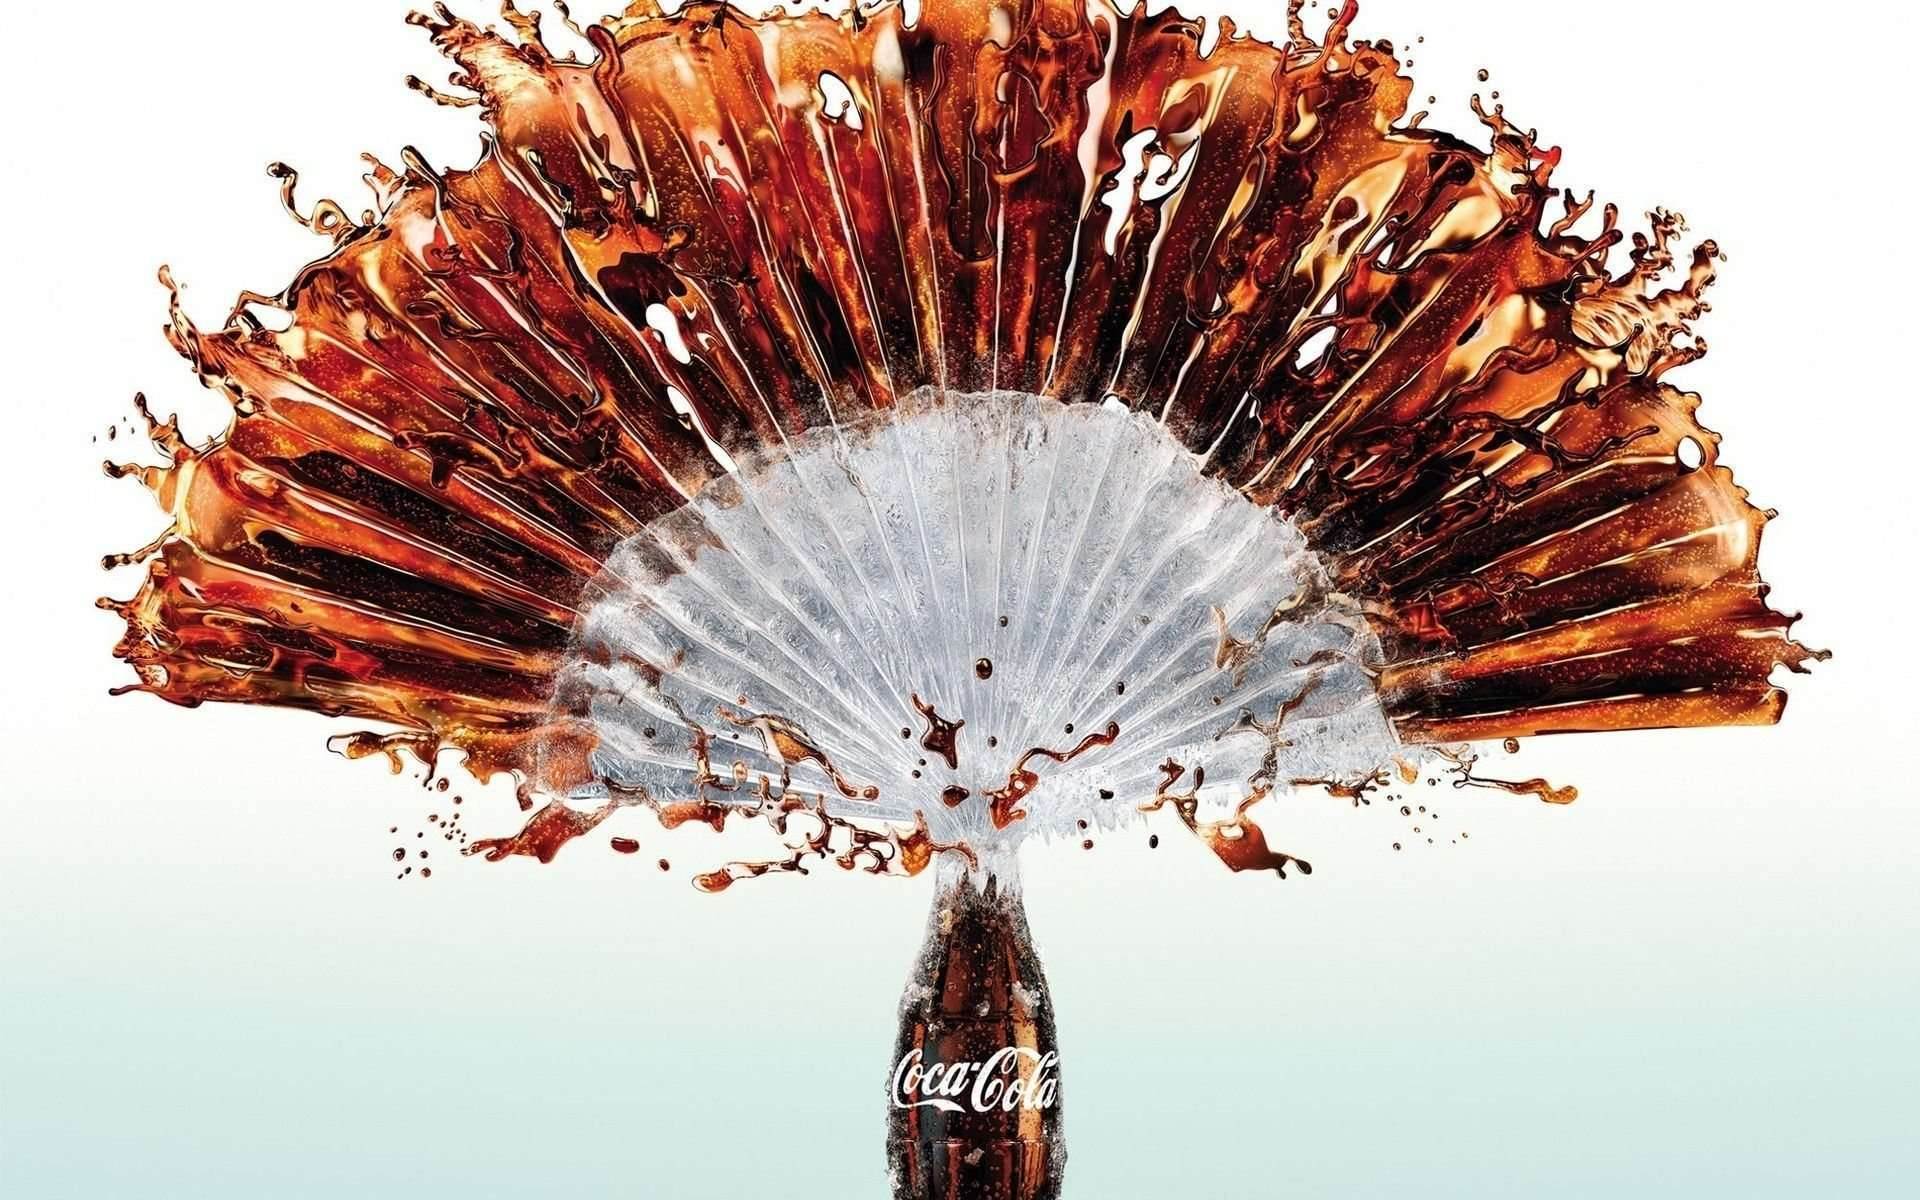 Wallpaper Background Creative Coca Cola Idea Source